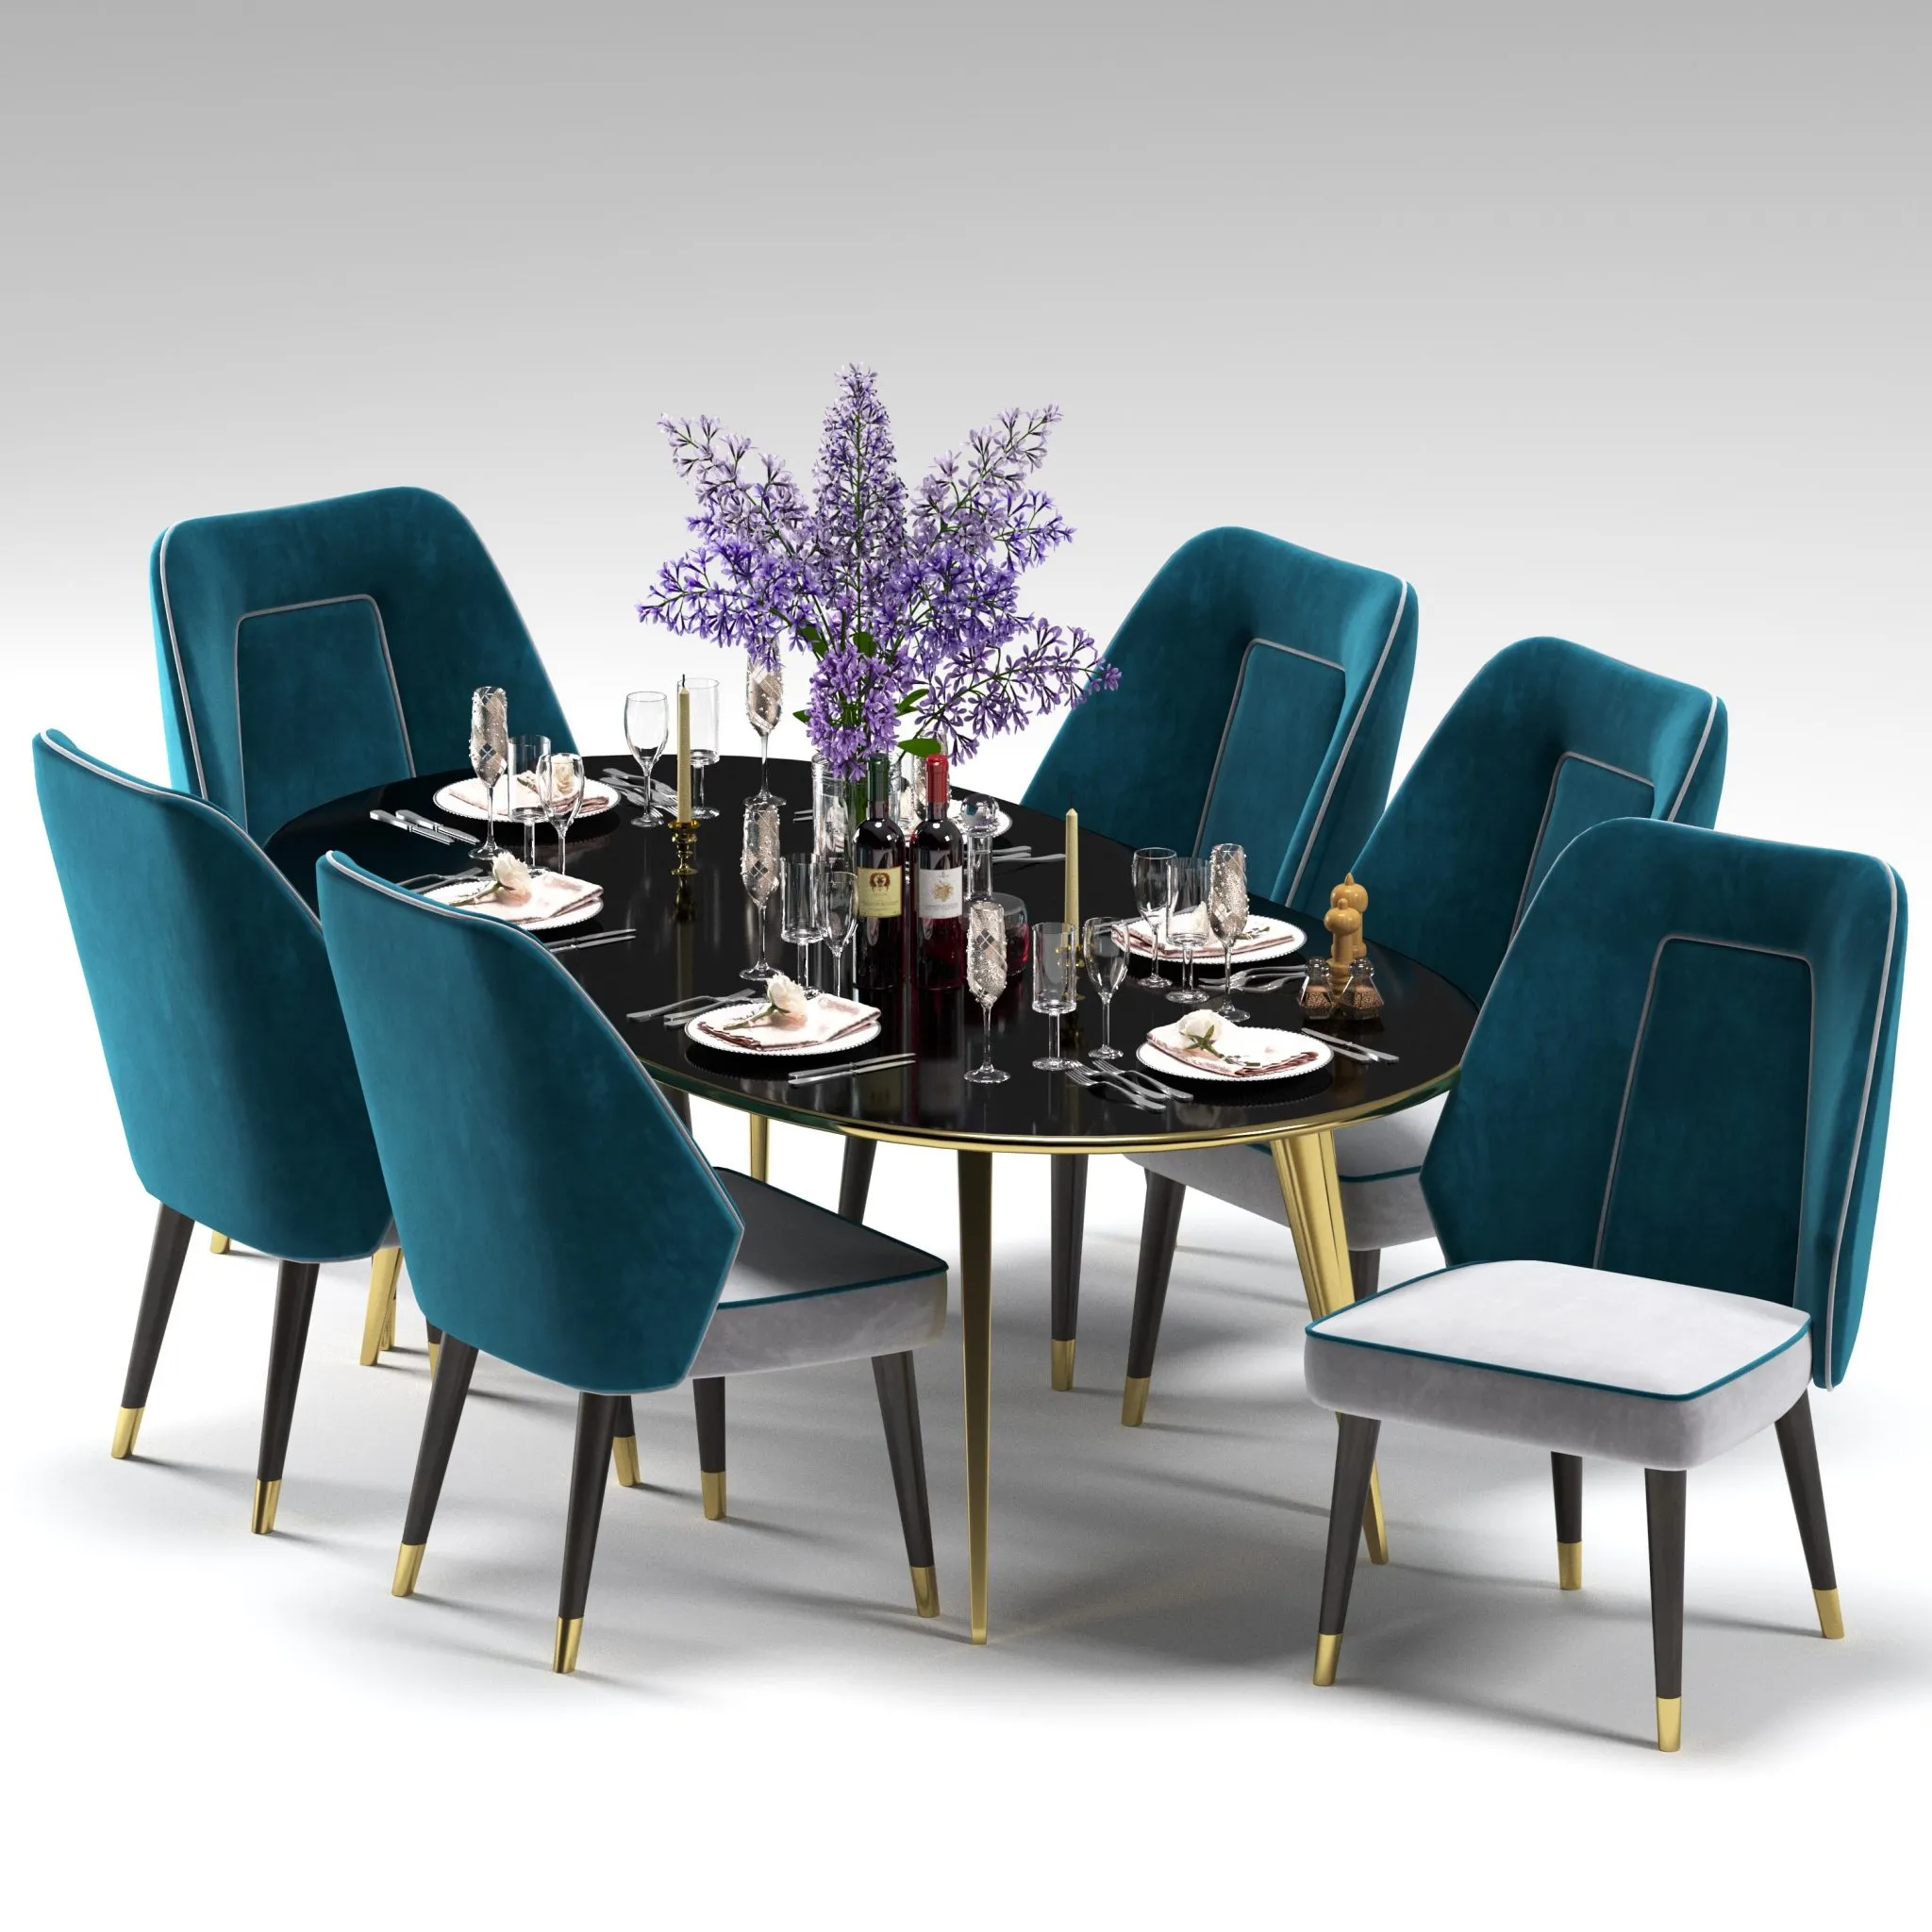 3ds Max Files – Model – 26 – Dinner Table Model – 1 – Dinner Table Model by x